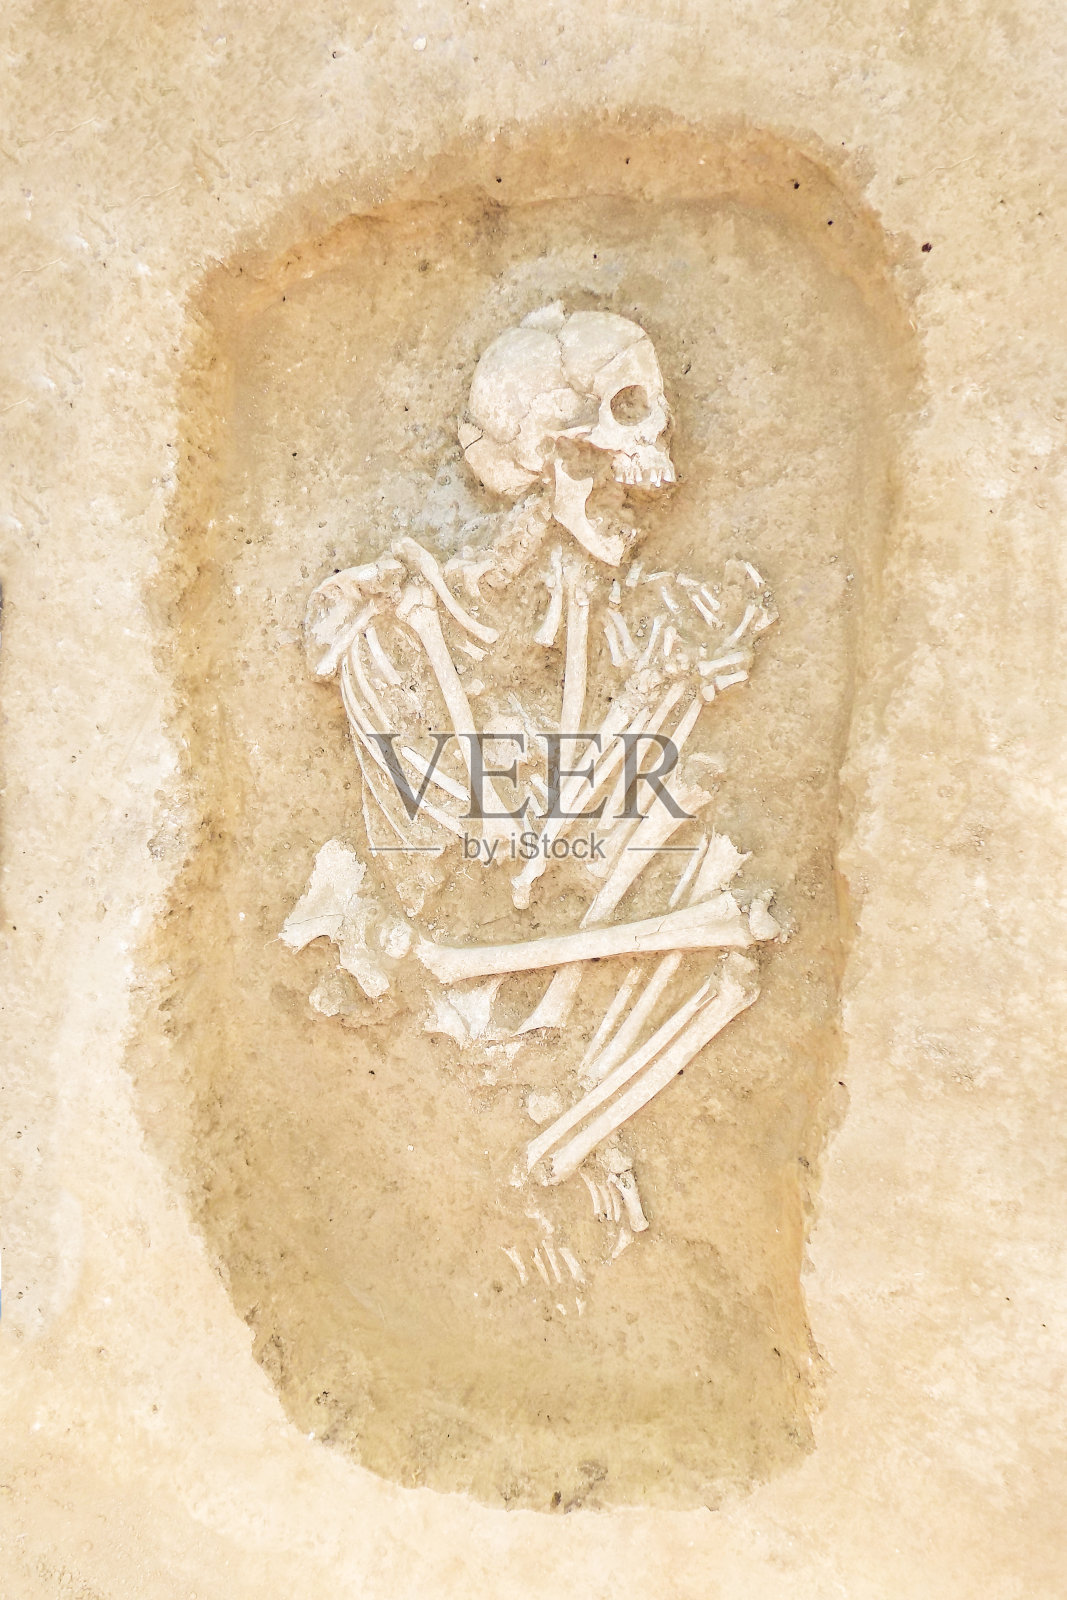 考古学家发掘并发现了人(一具埋在人骨中的骸骨)，对古代细节的研究，史前。照片摄影图片